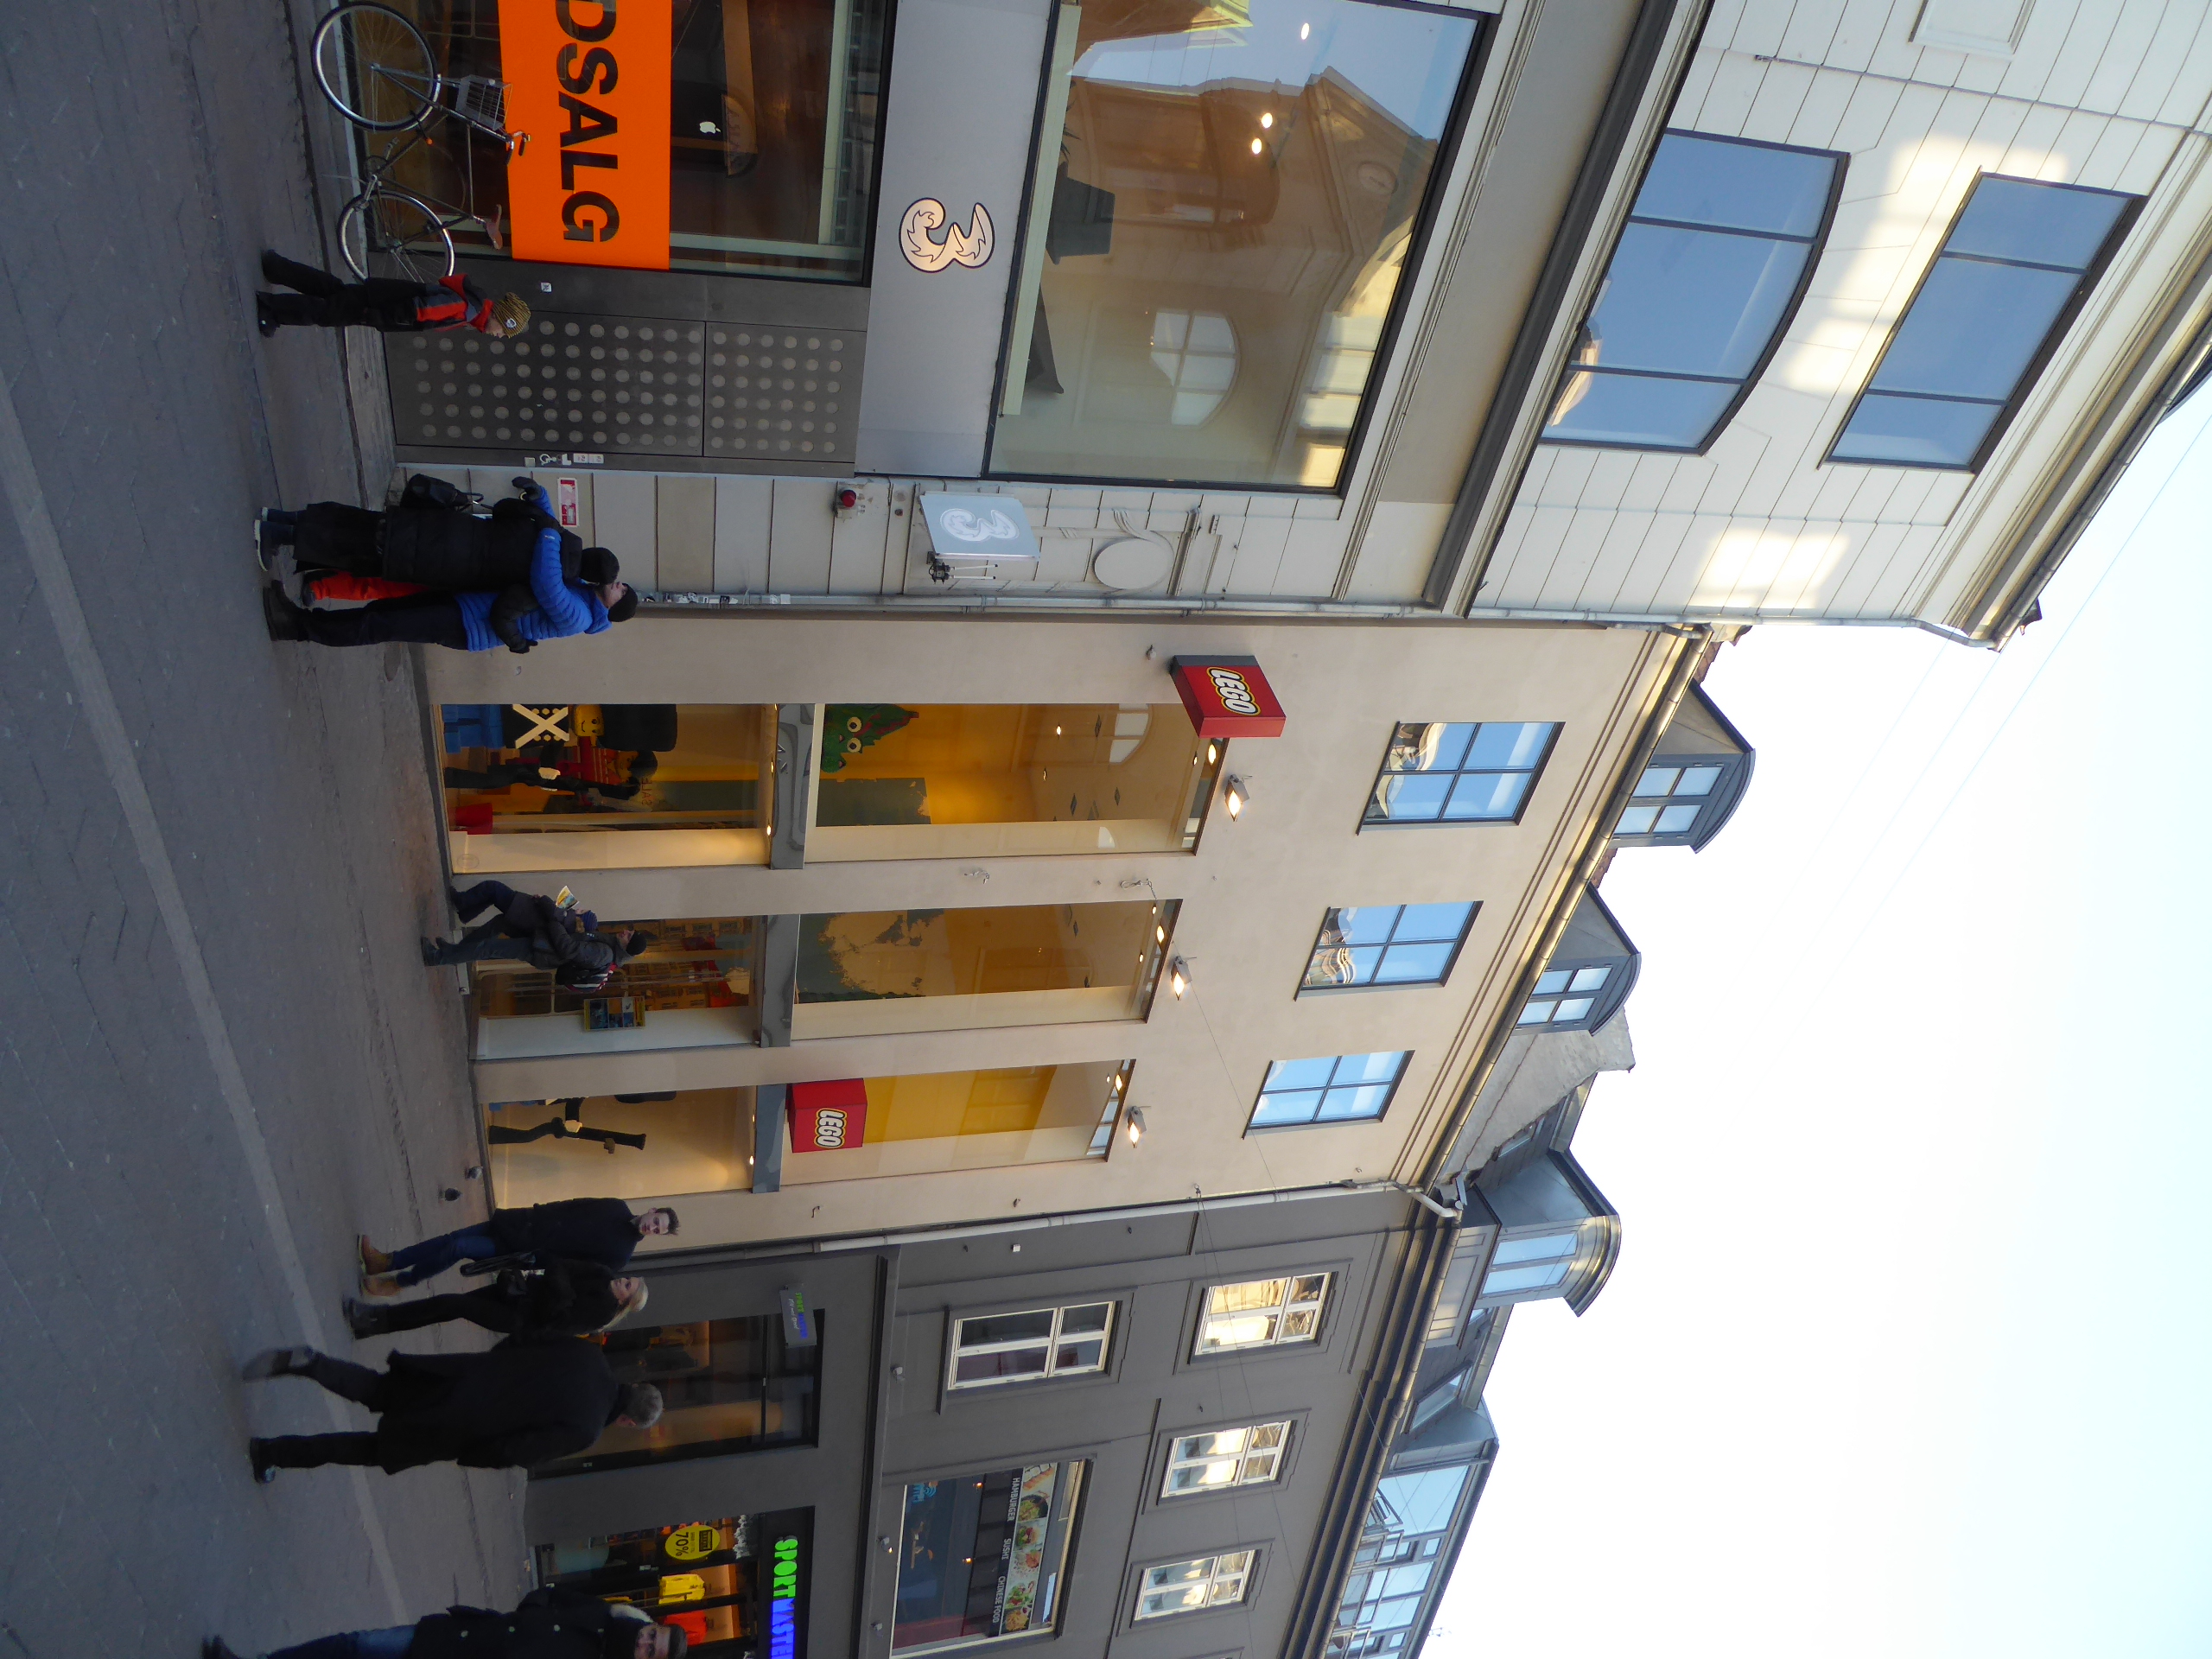 Store Copenhagen 01.jpg - Wikimedia Commons